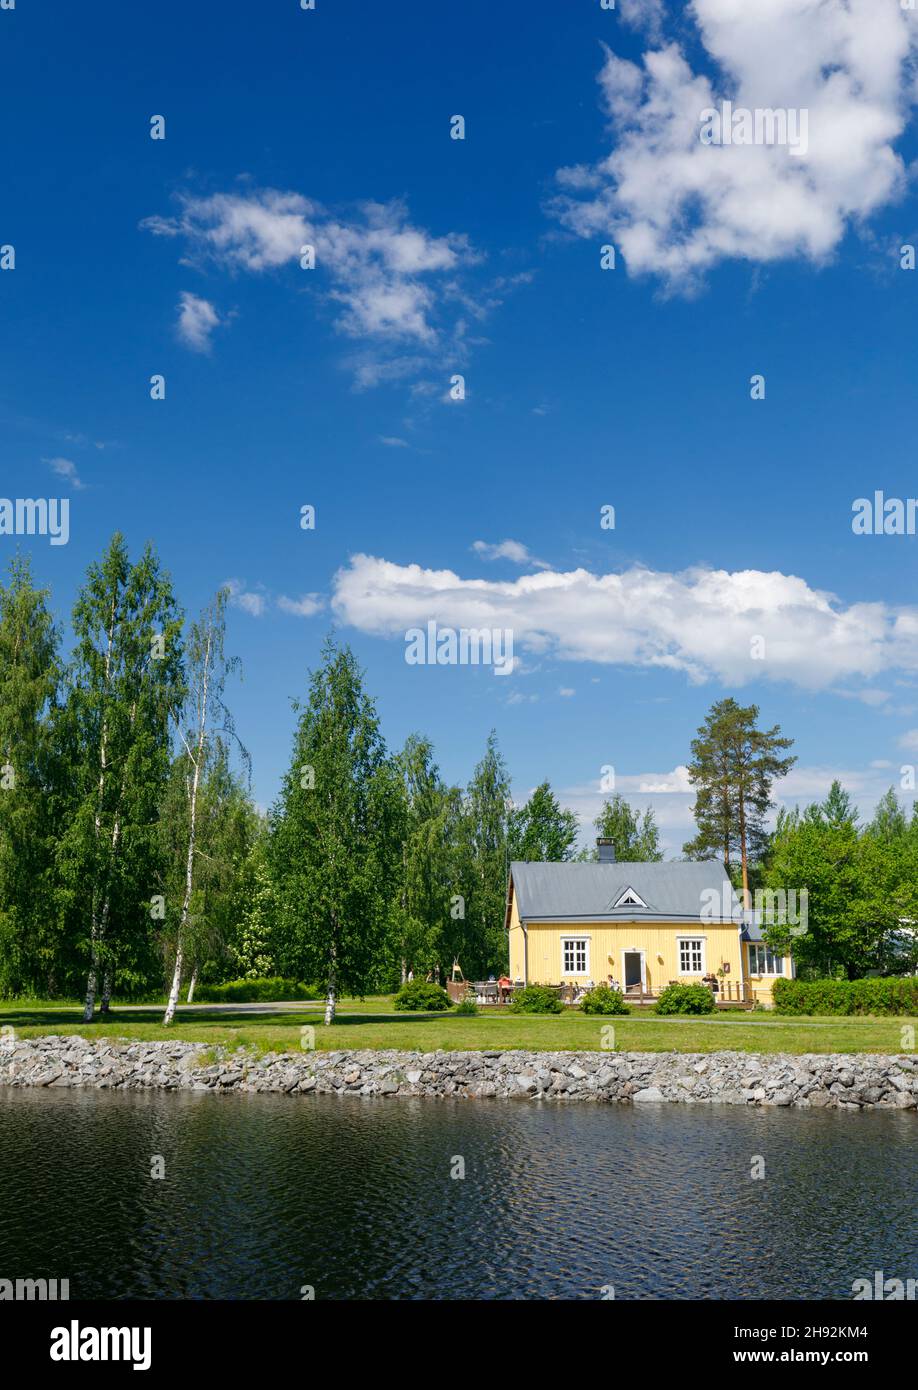 Neiturin Kievari am Ufer des Neituri-Kanals ist ein kleines Café und Restaurant für Touristen und Reisende mit Autos oder Booten, Finnland Stockfoto